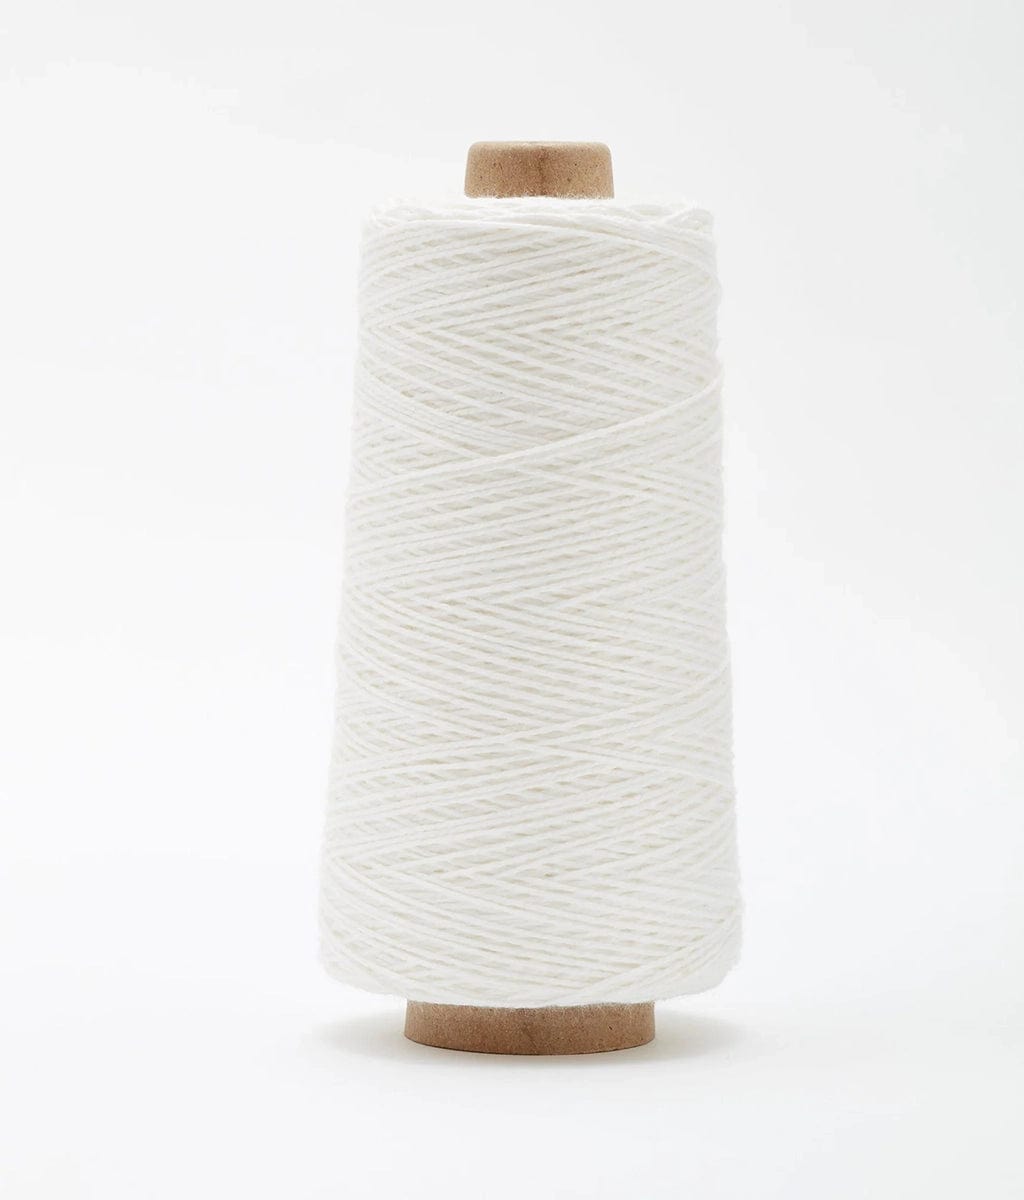 GIST Weaving Yarn White Beam 3/2 Organic Cotton